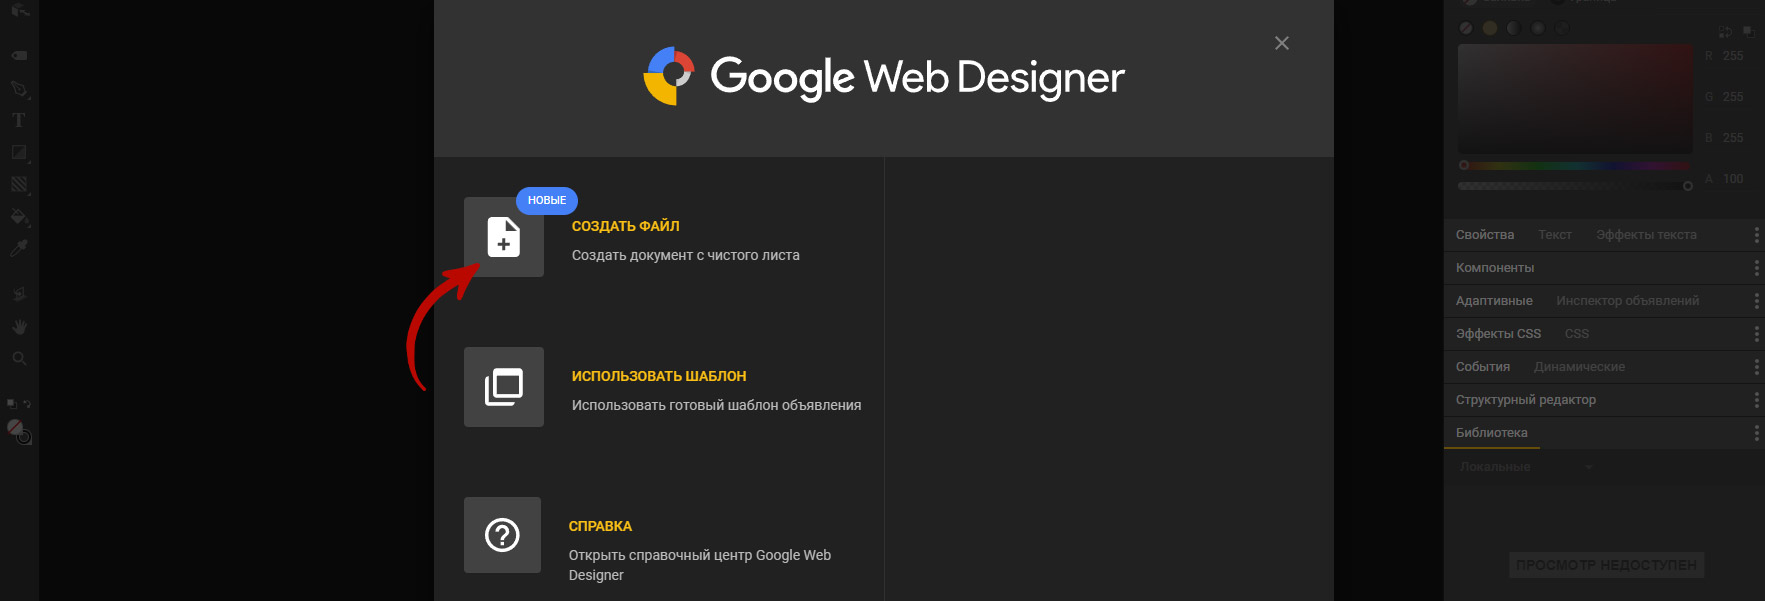 Скриншот программы Google Web Design. Вкладка создания баннера